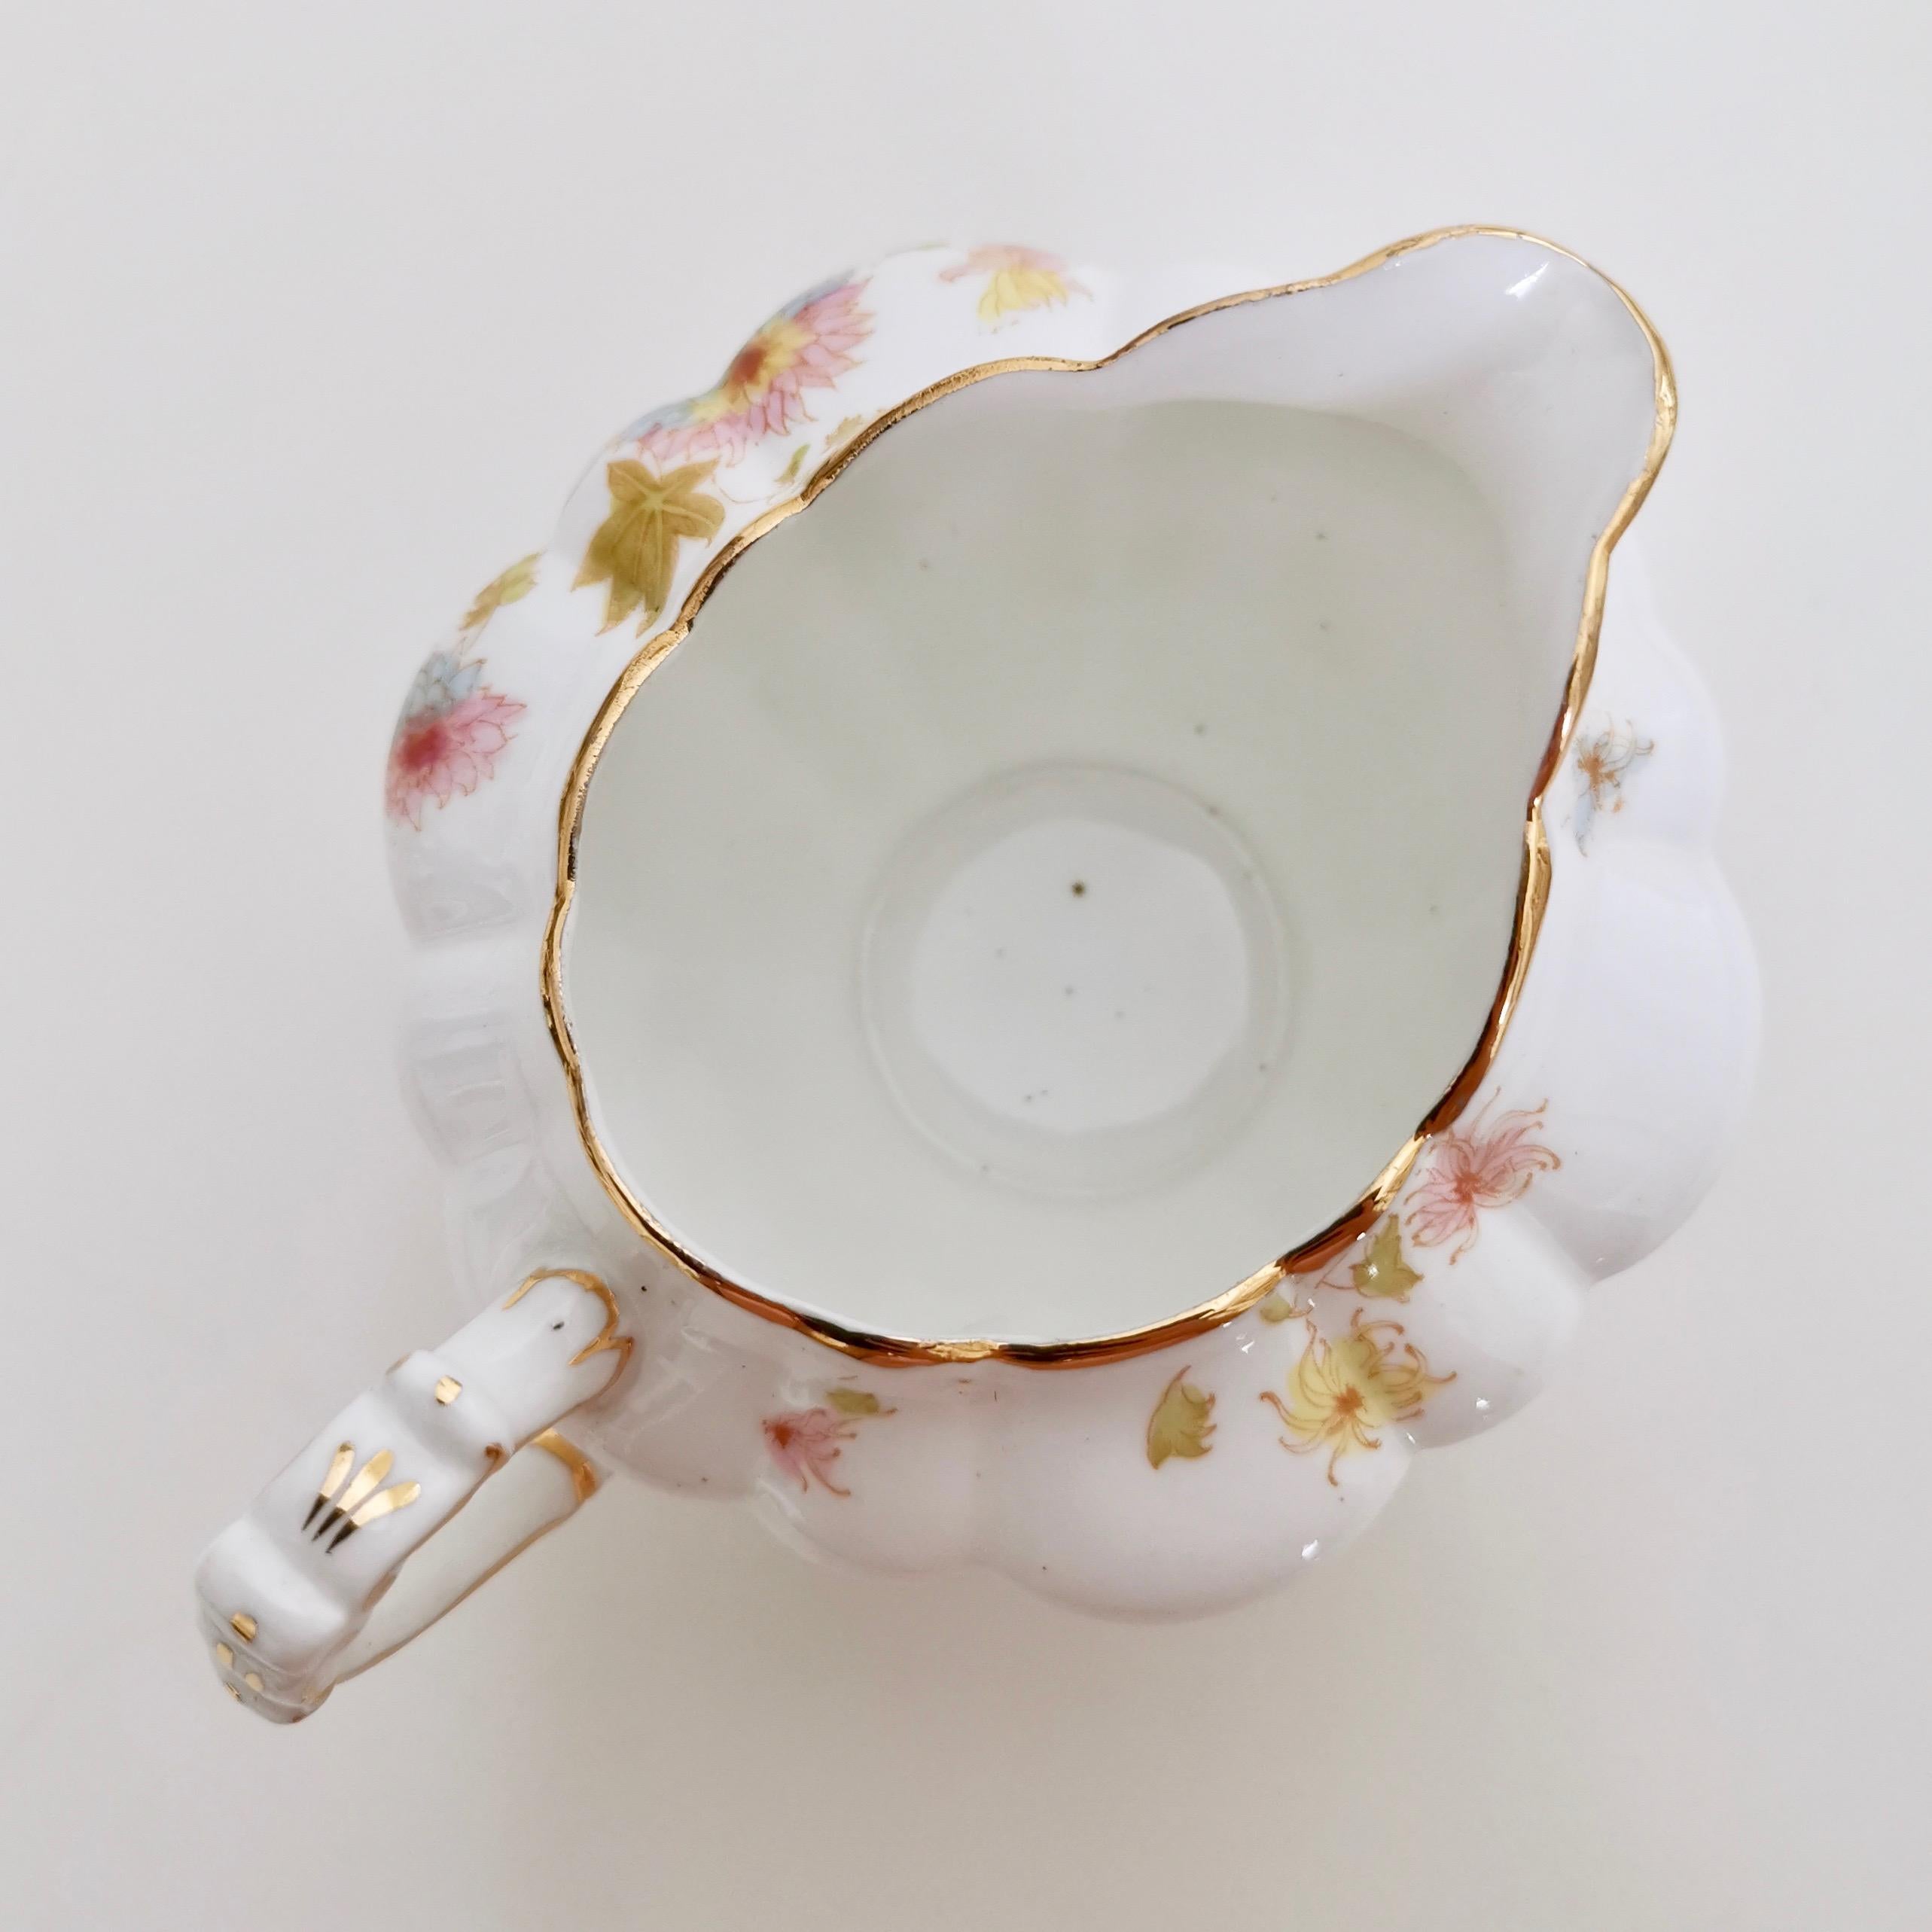 Wileman Porcelain Tea Set, Chrysanthemum, Pastel Colors, Art Nouveau, 1896 5